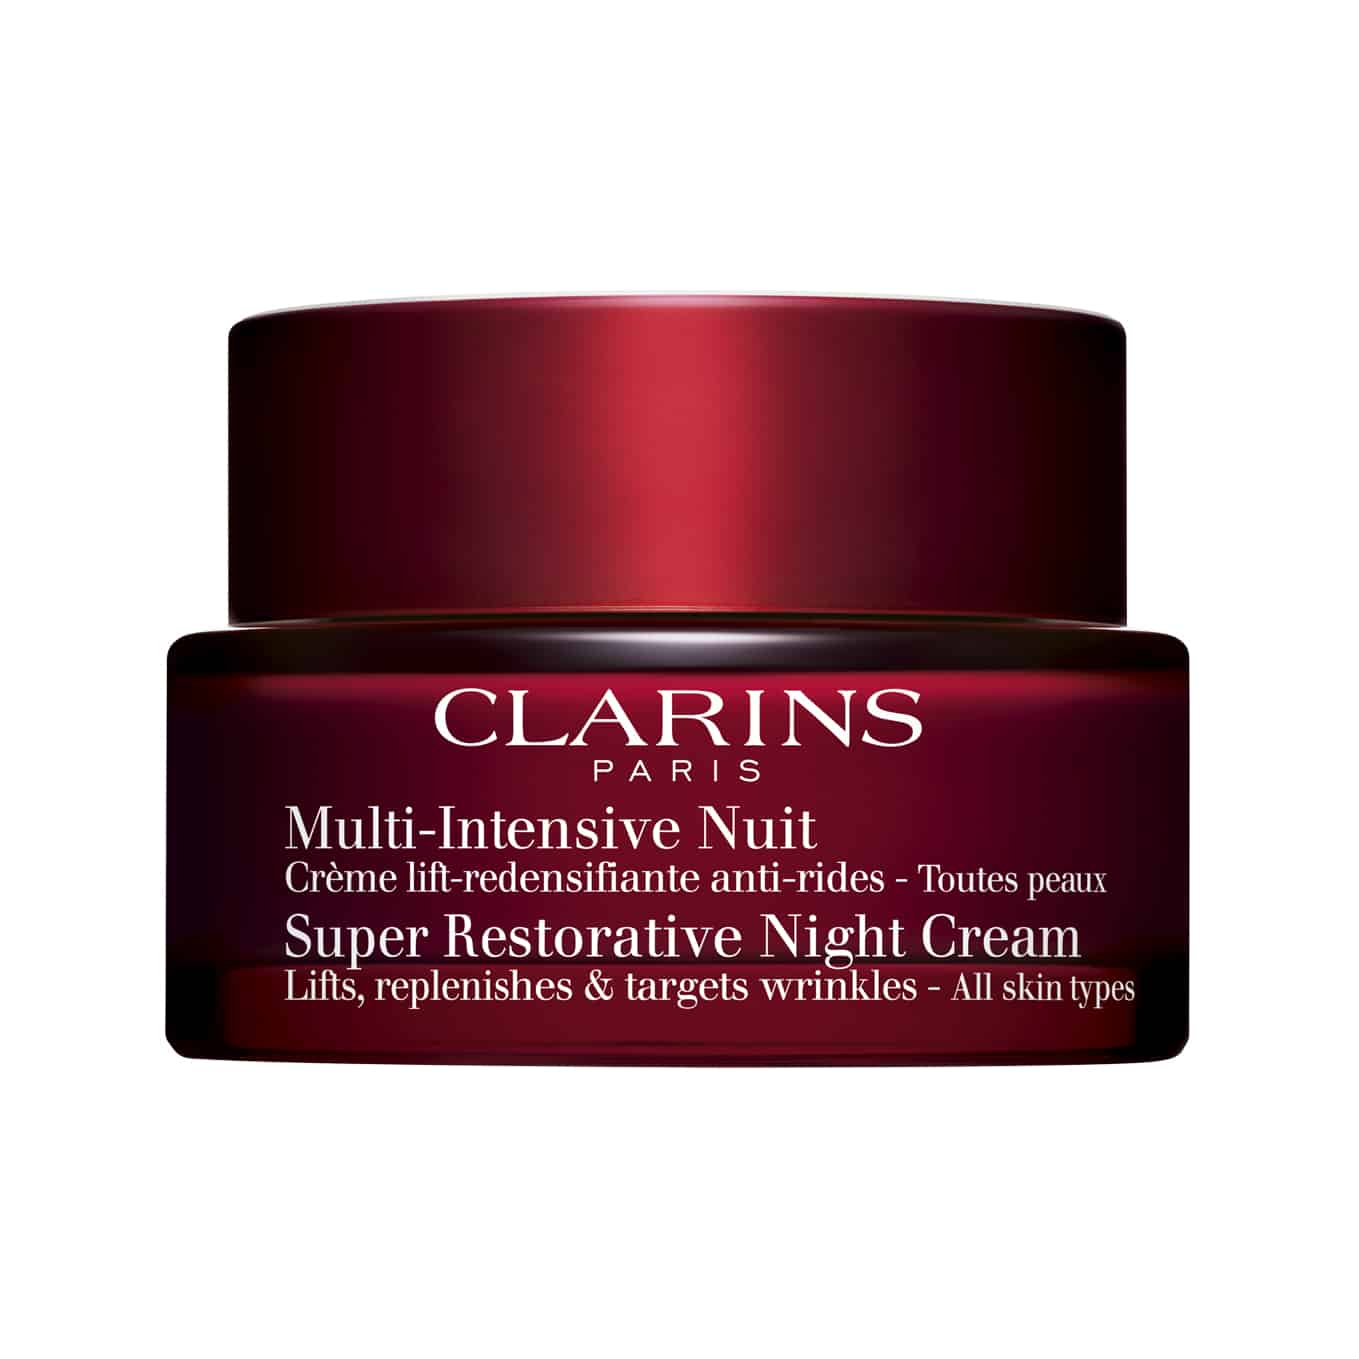 Super Restorative Night Cream – Clarins